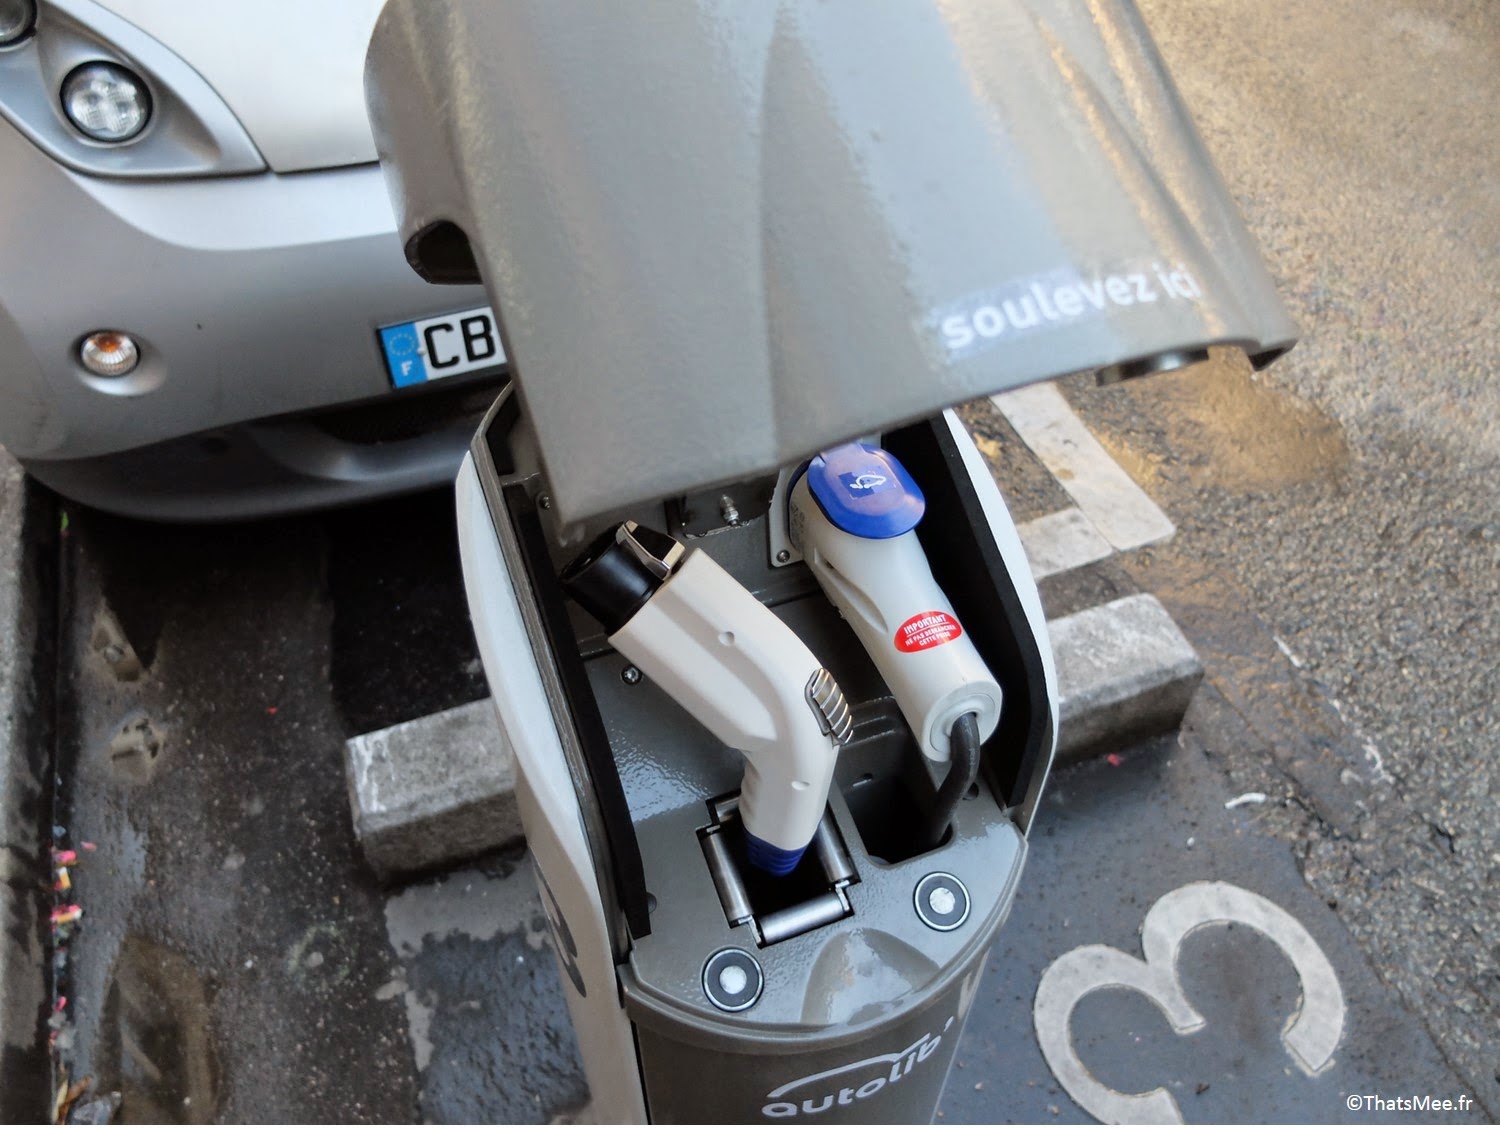 Autolib voiture automobile électrique location courte durée mairie de Paris, branchements électriques cable chargement Autolib